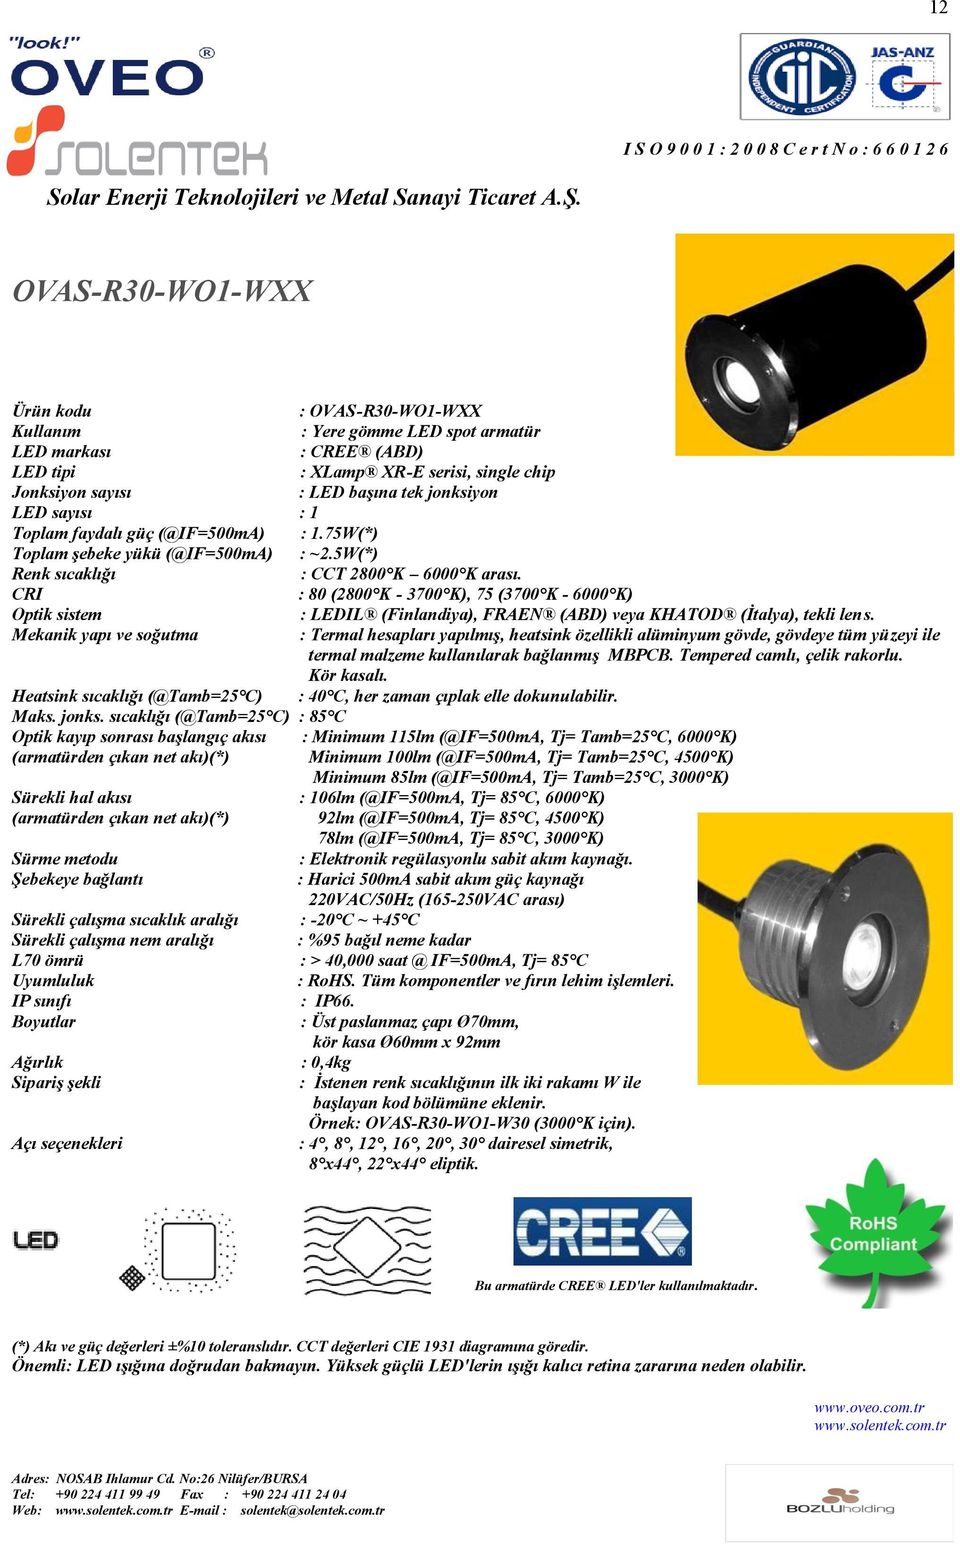 : 80 (2800 K - 3700 K), 75 (3700 K - 6000 K) Optik sistem : LEDIL (Finlandiya), FRAEN (ABD) veya KHATOD (Ġtalya), tekli lens.